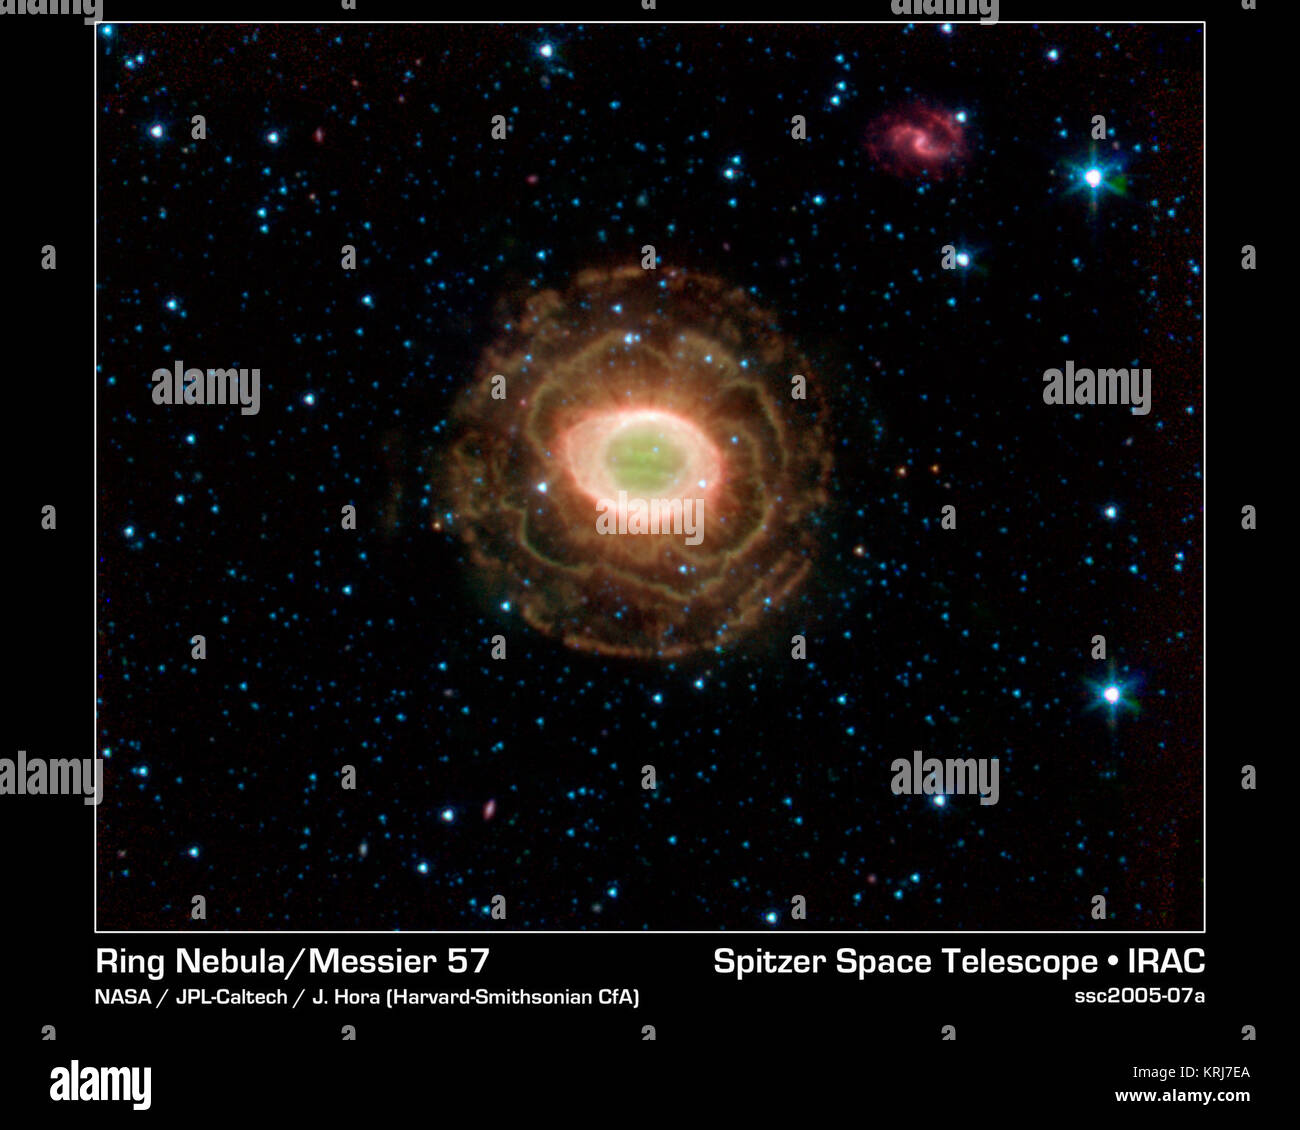 Die NASA-Weltraumteleskop Spitzer findet eine zarte Blume im Ringnebel, wie in diesem Bild dargestellt. Die äußere Schale dieser Planetarische Nebel sieht überraschend ähnlich wie die zarten Blütenblätter einer Kamelien blühen. Ein planetarischer Nebel ist ein Shell Material von einem sterbenden Stern ausgeworfen. Rund 2.000 Lichtjahre von der Erde entfernt im Sternbild Lyra, der ringnebel wird auch als Messier 57, NGC 6720 bekannt. Es ist eines der besten Beispiele für eine planetarische Nebel und ein beliebtes Ziel für Amateurastronomen. Der "Ring" ist eine dicke Zylinder aus glühendem Gas- und Staubscheibe um den Stern zum Scheitern verurteilt. Als t Stockfoto